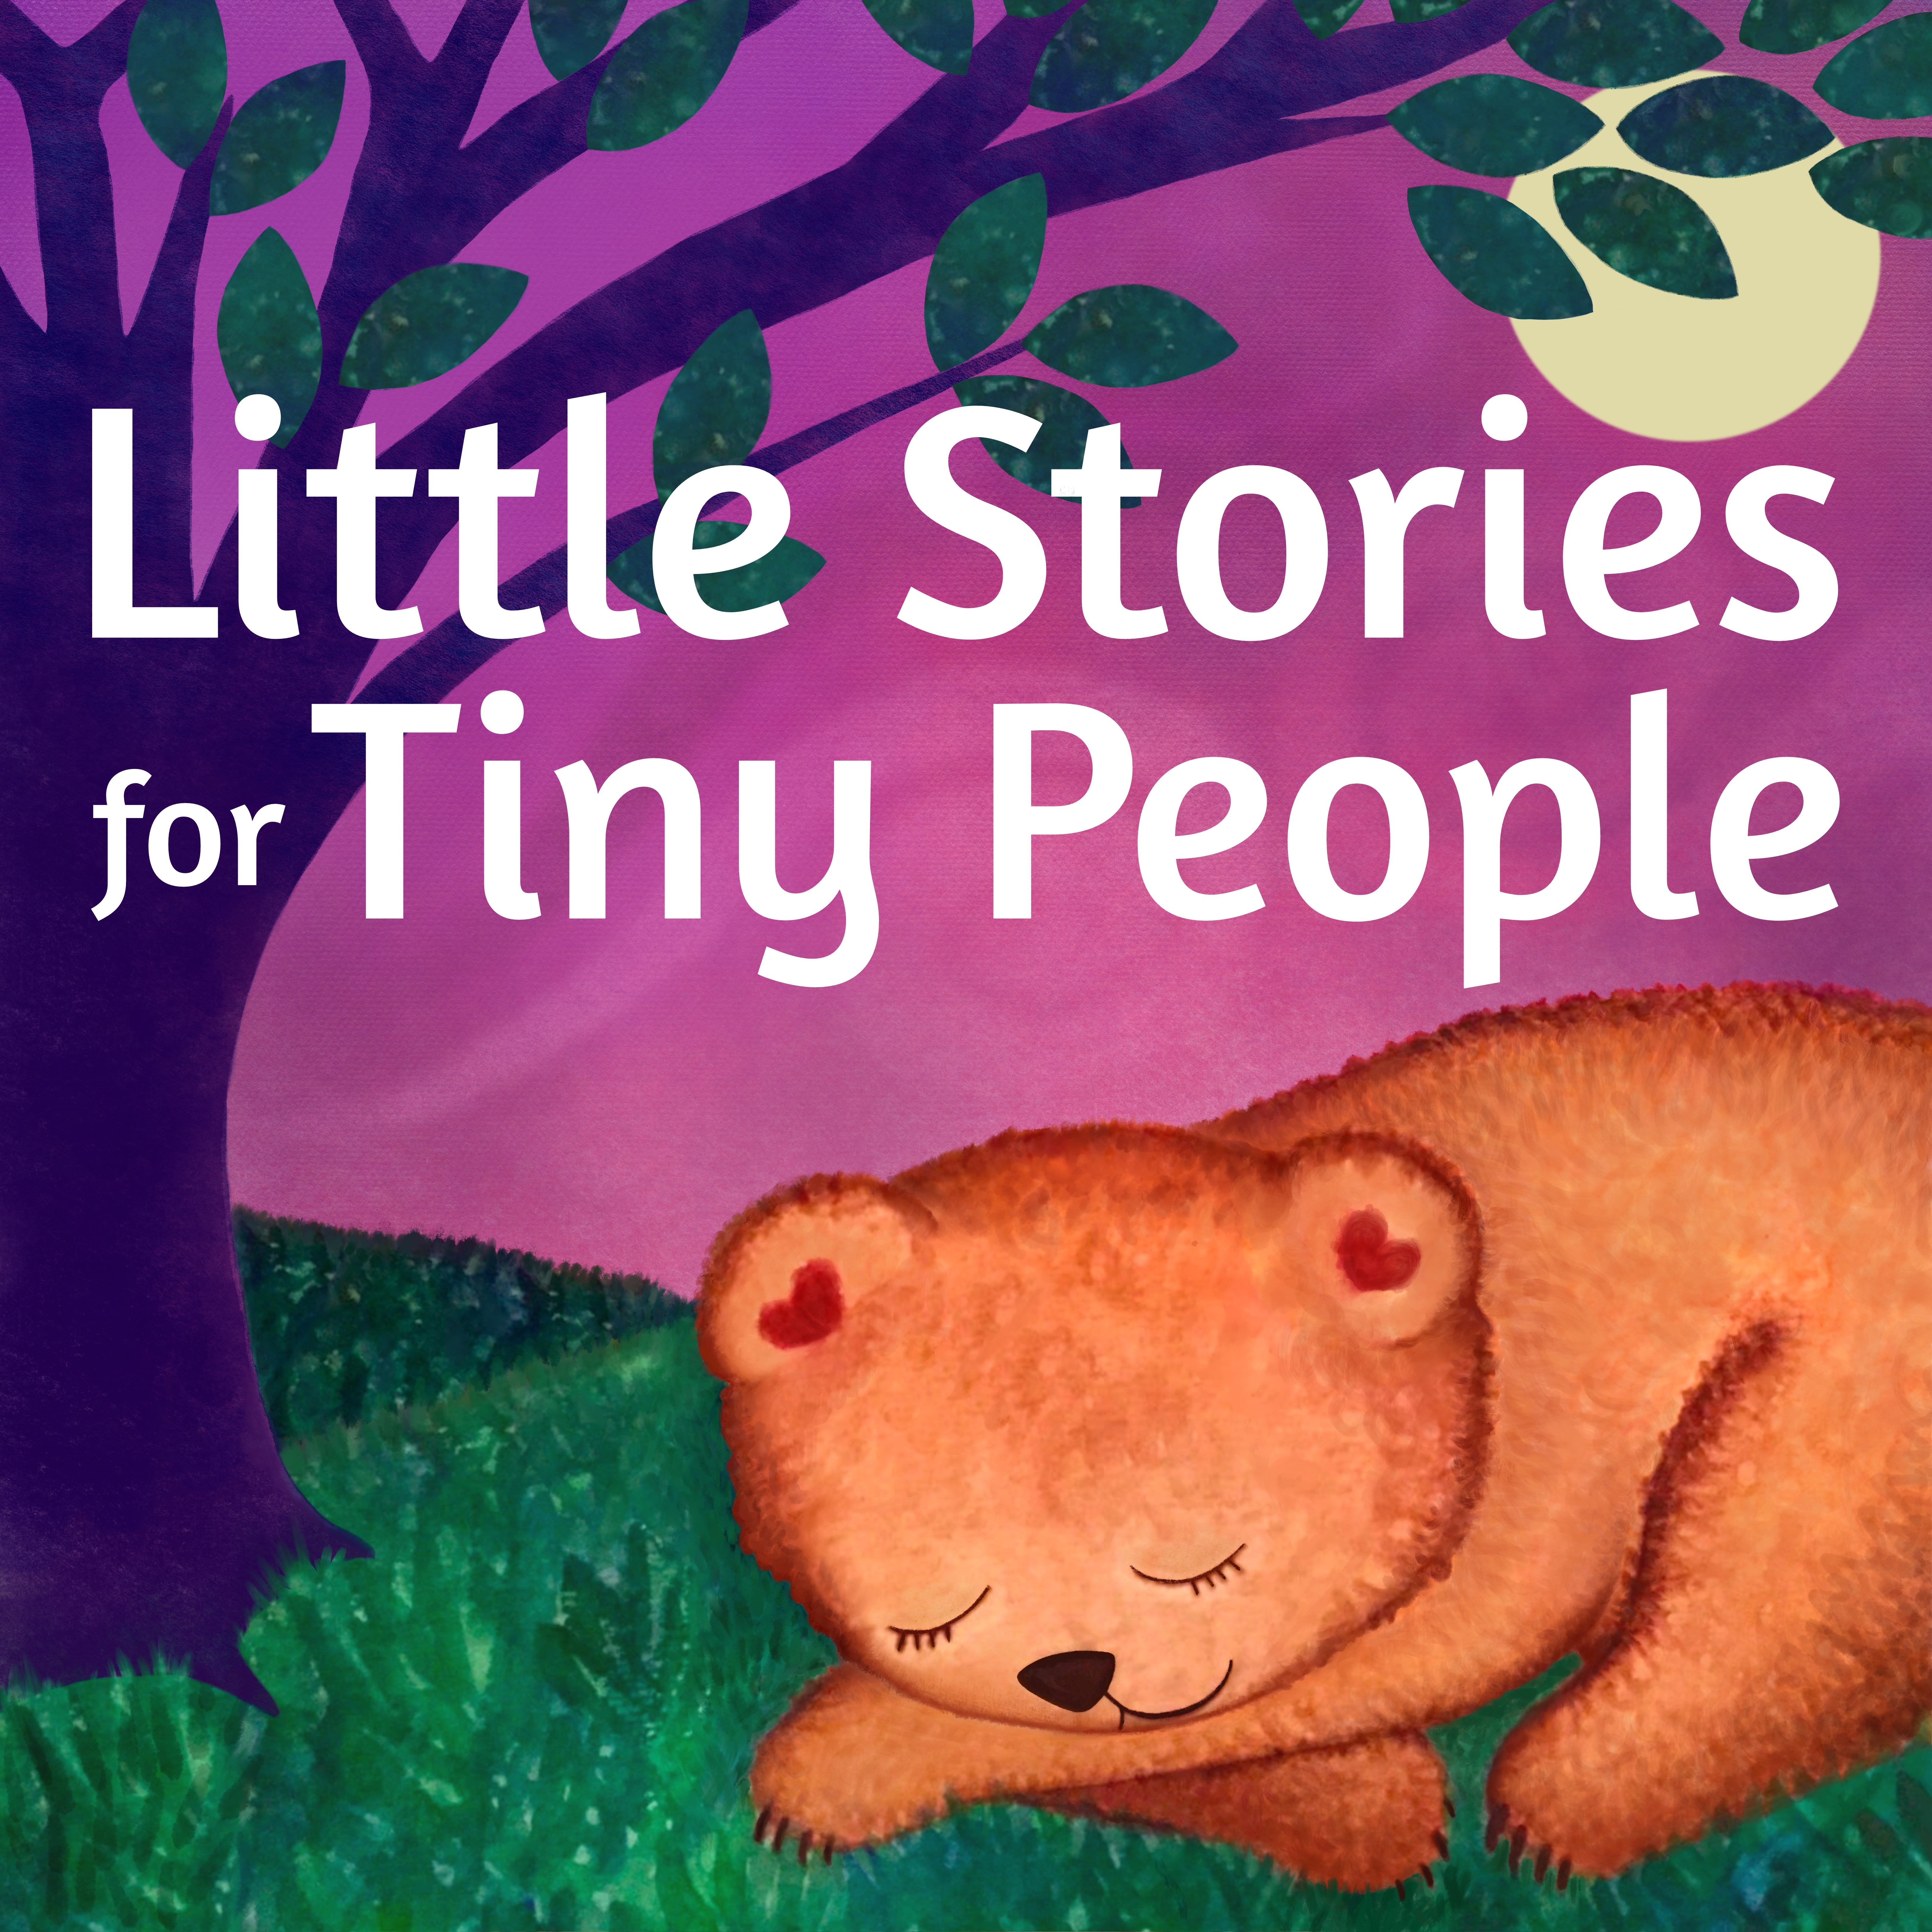 Little Store. Little story. Little stories for Kids. For story. Little history